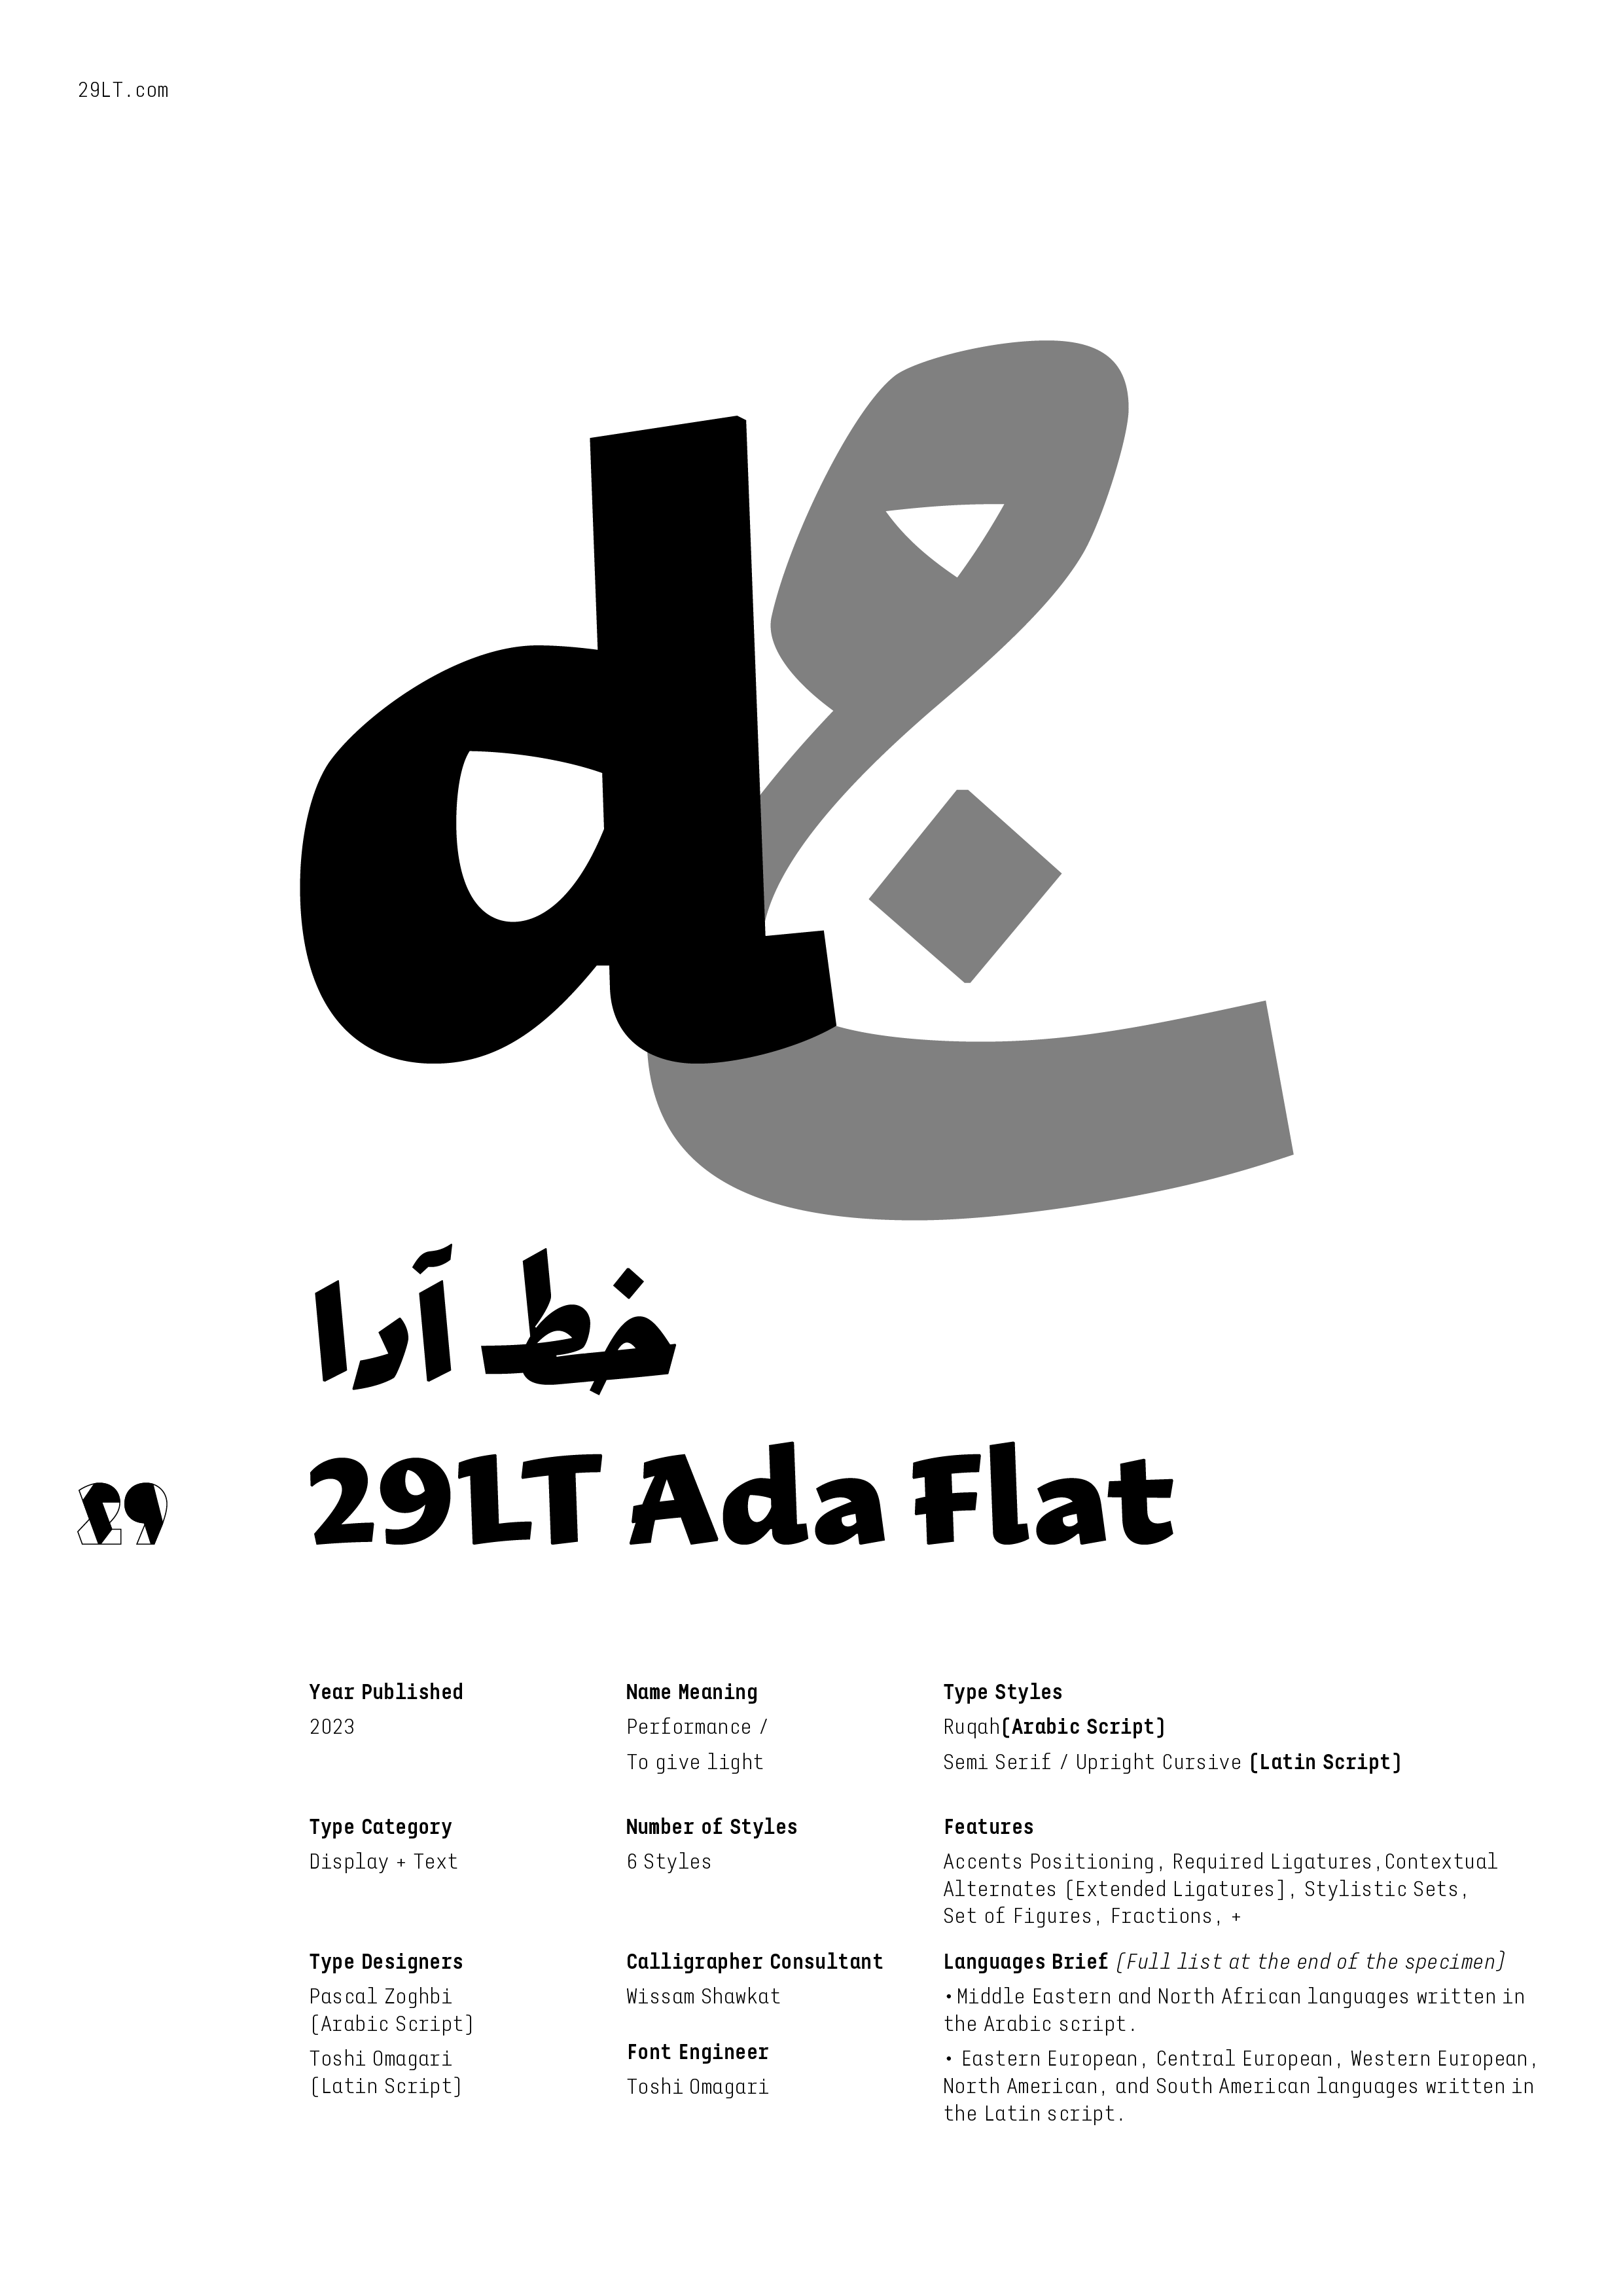 29LT Ada Flat-PDF1